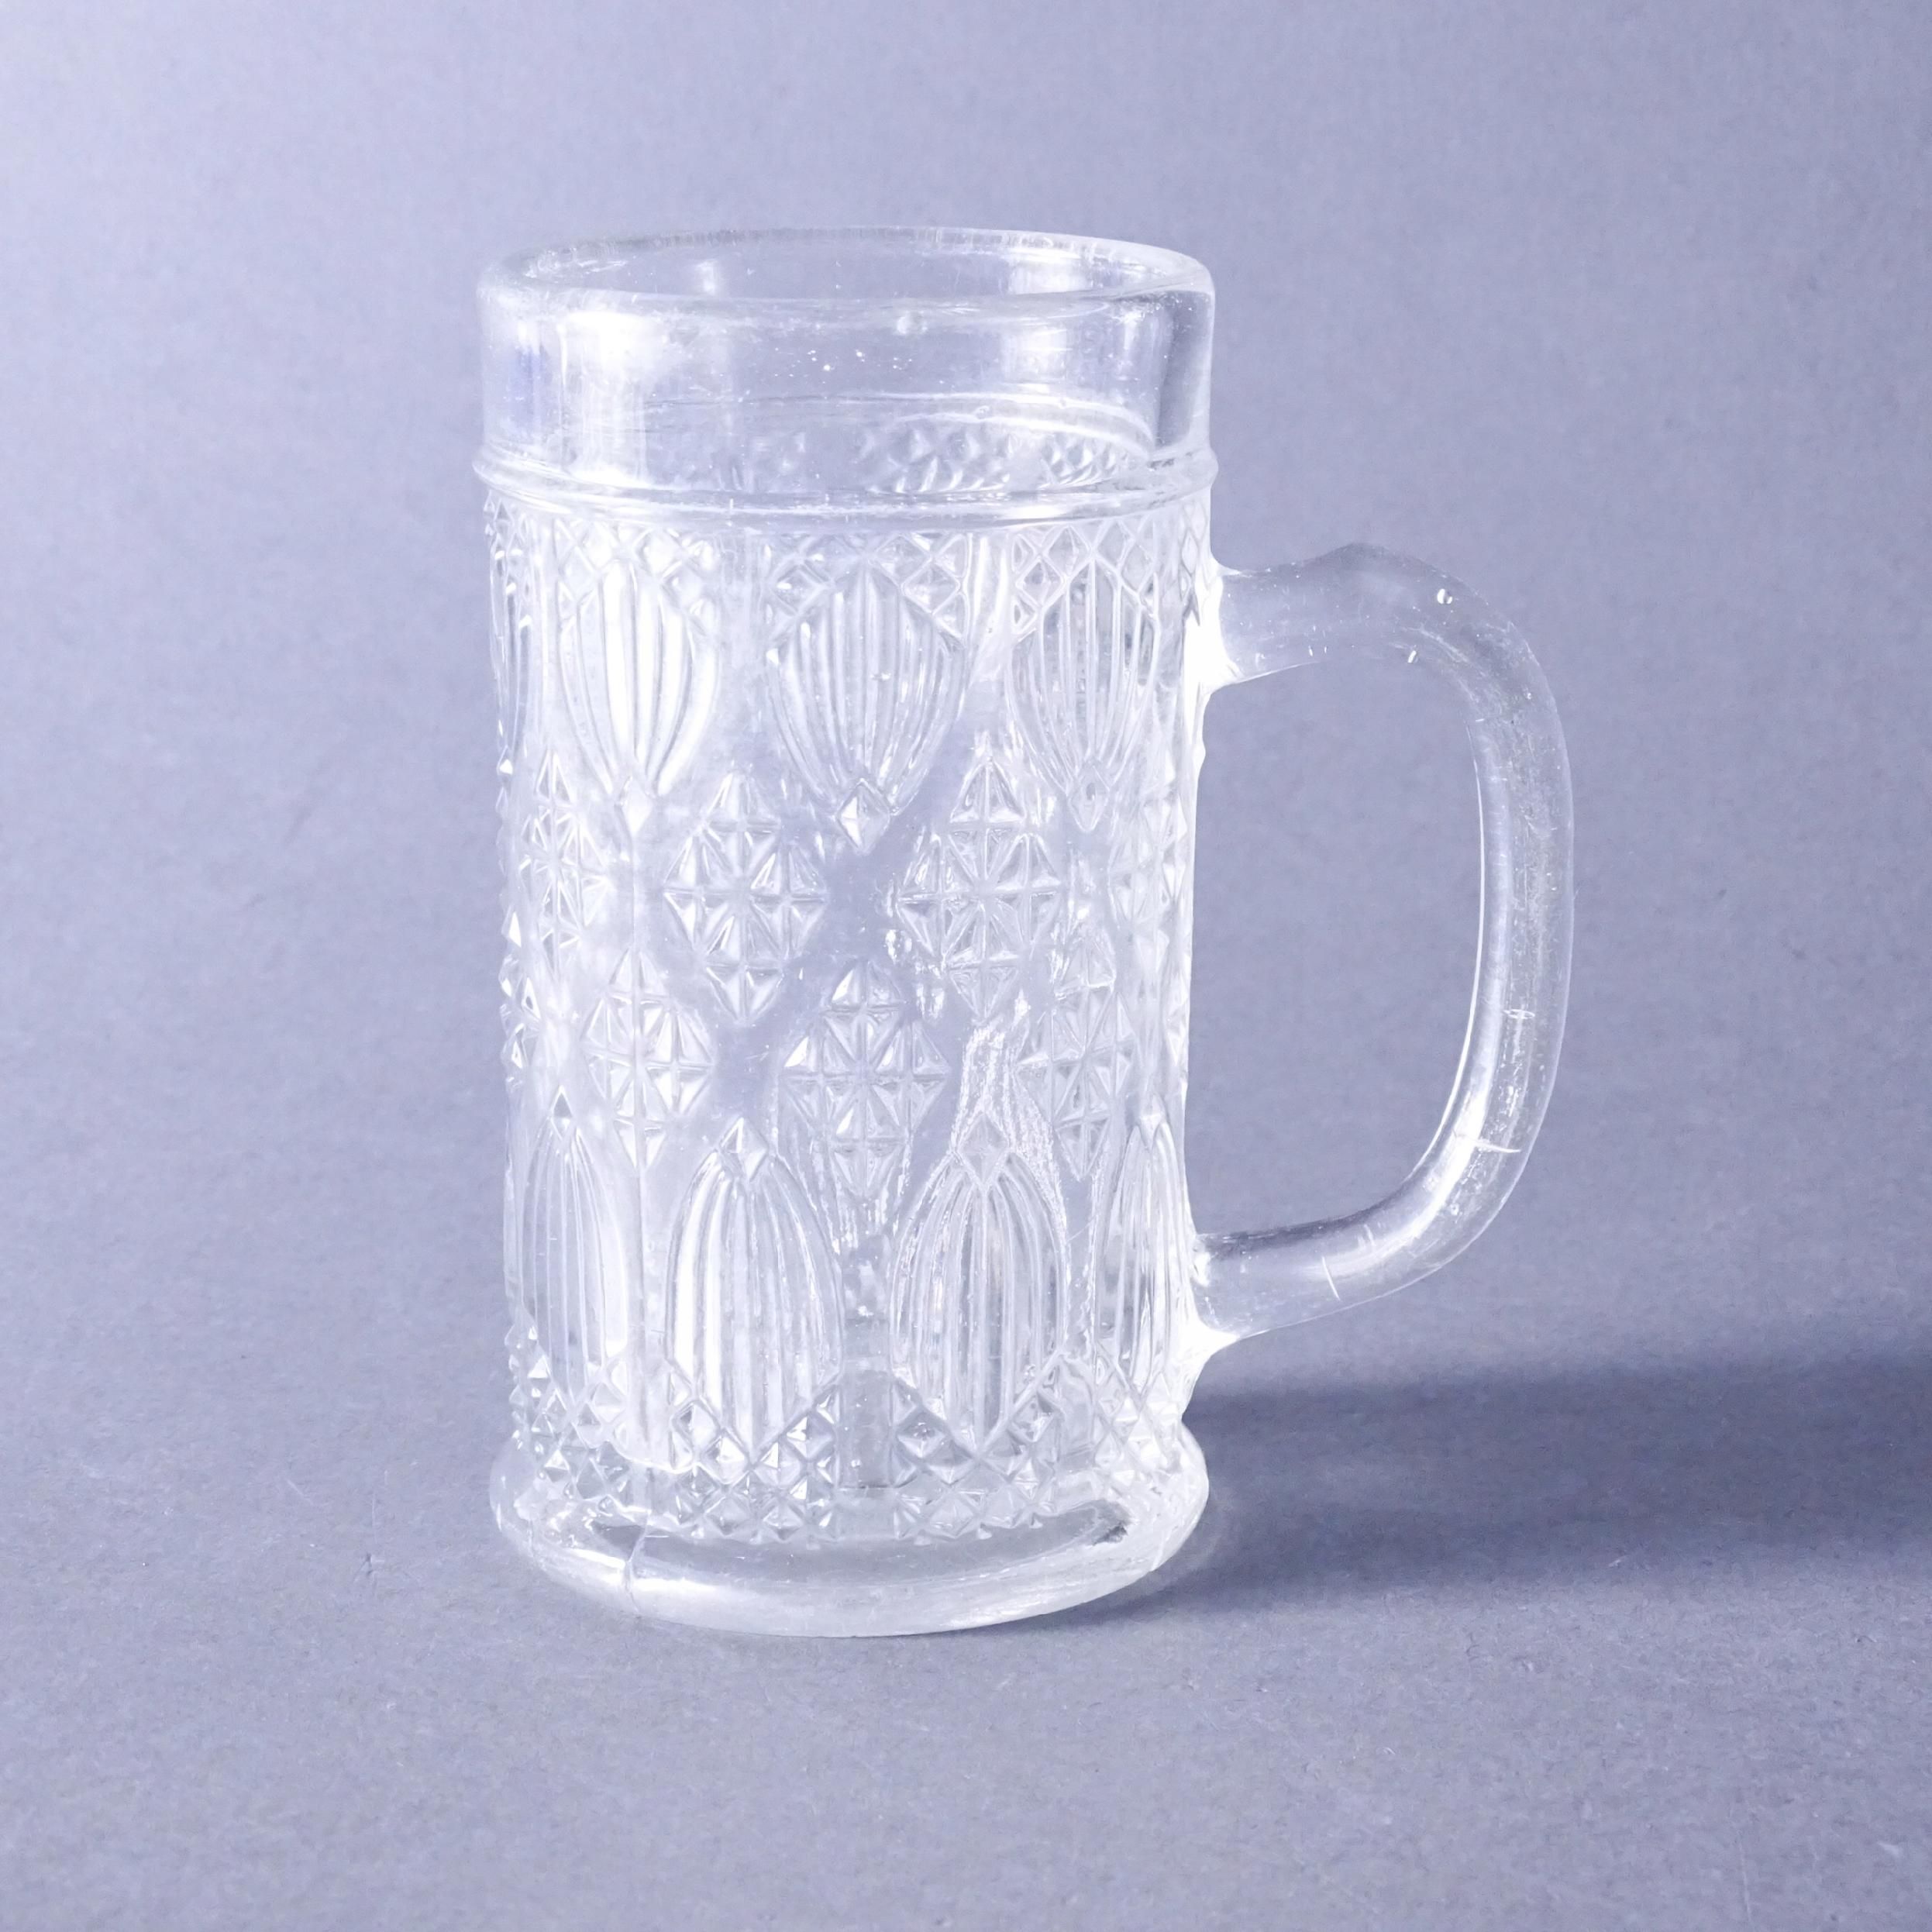 przełom xix i xx wieku zabytkowy kufel szklany